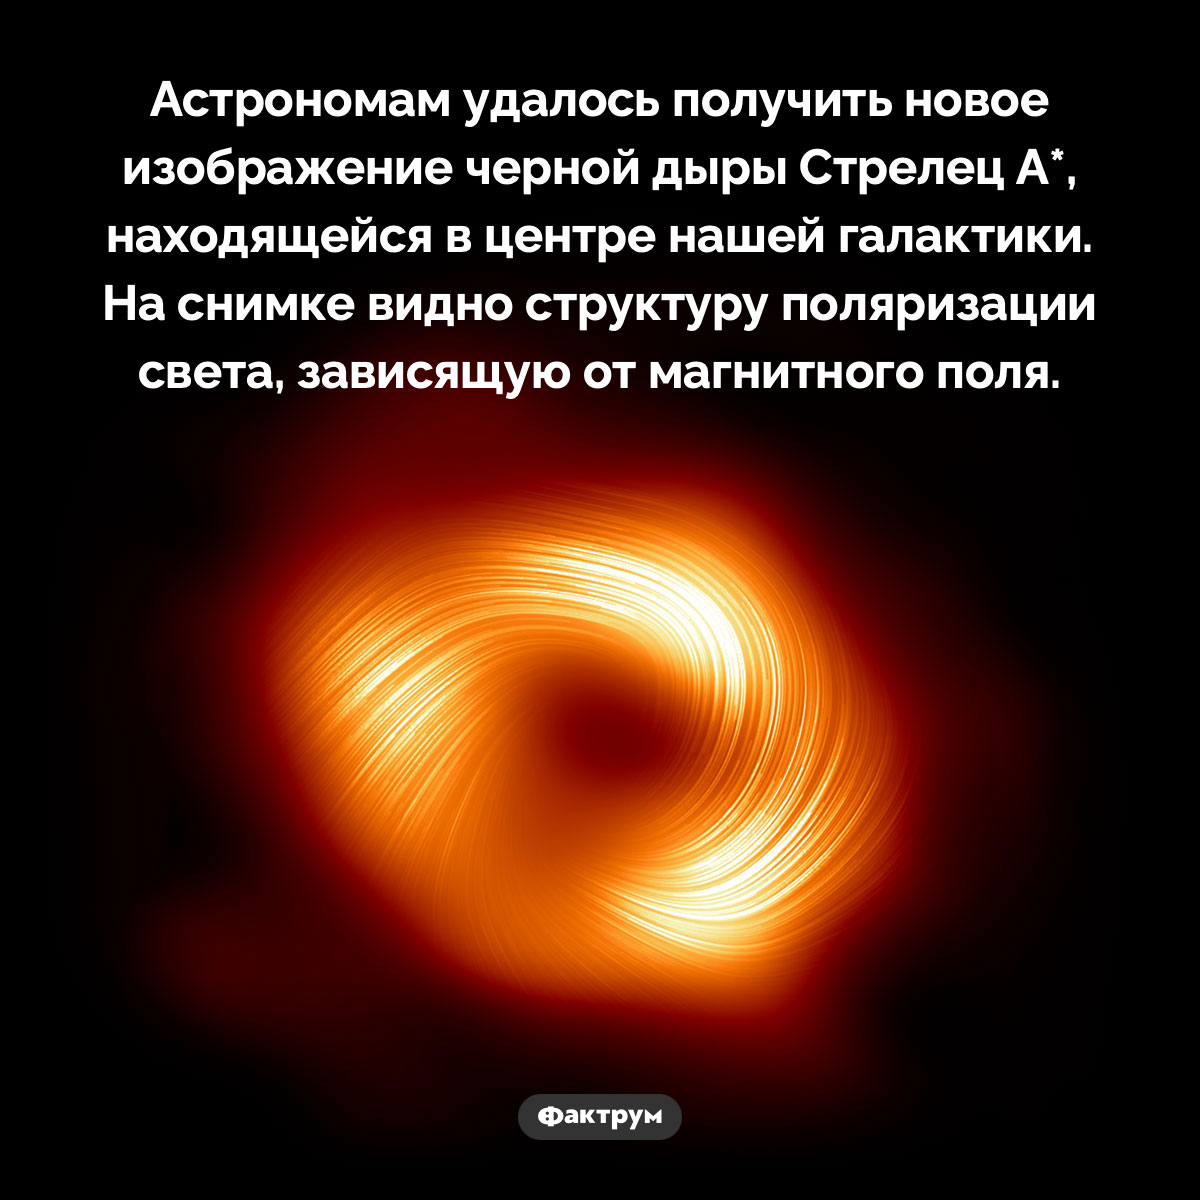 Новый снимок черной дыры Стрелец А* . Астрономам удалось получить новое изображение черной дыры Стрелец А*, находящейся в центре нашей галактики. На снимке видно структуру поляризации света, зависящую от магнитного поля.